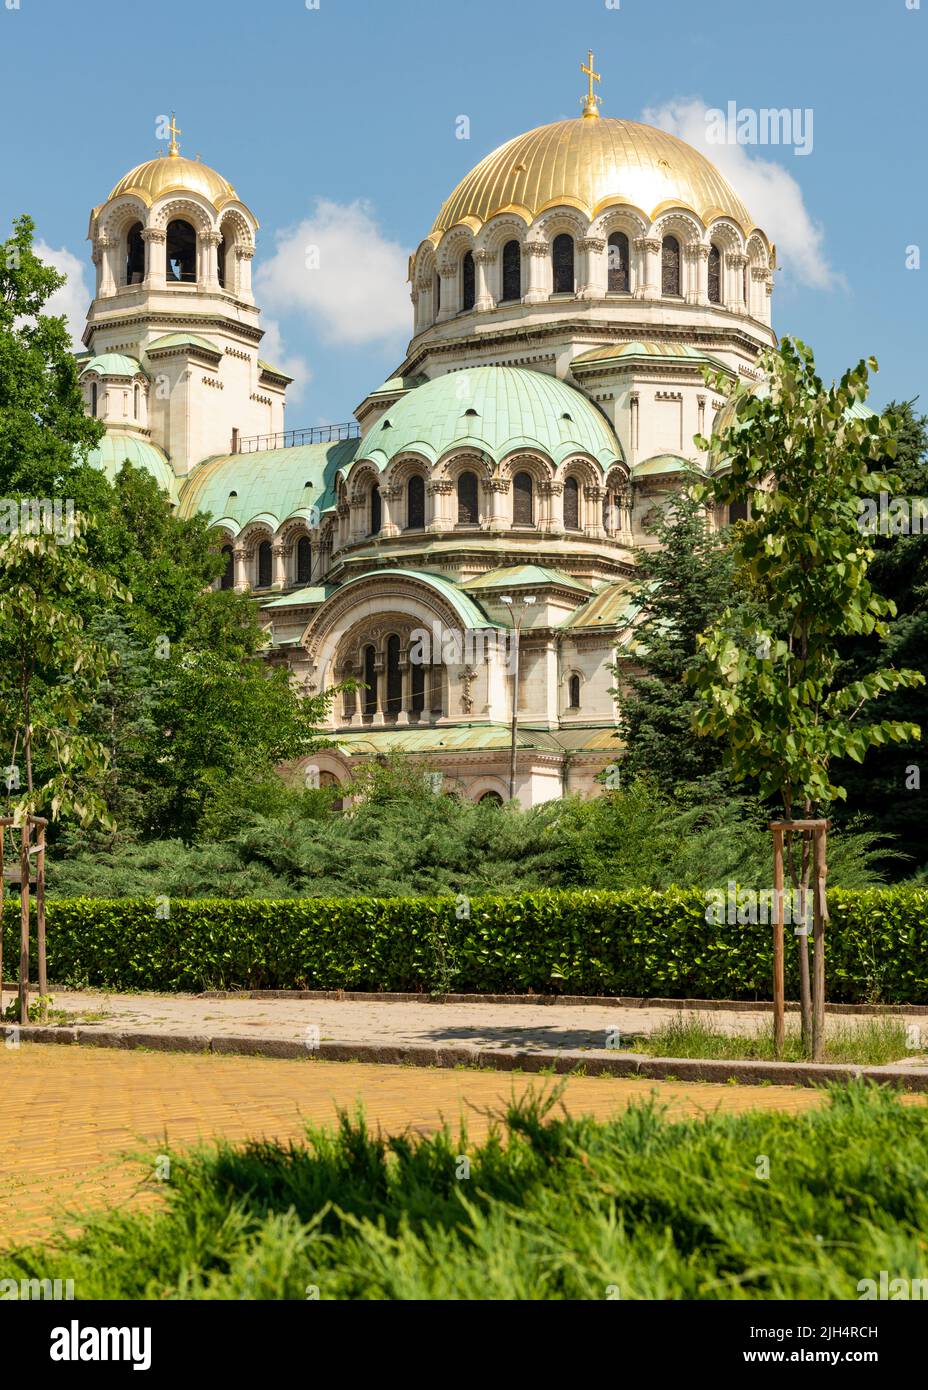 Alexander-Newski-Kathedrale Sofia Bulgarien und Goldene Kuppeln architektonische Details von St. Alexander Nevski Orthodoxe Kathedrale in Sofia, Bulgarien, Balkan Stockfoto